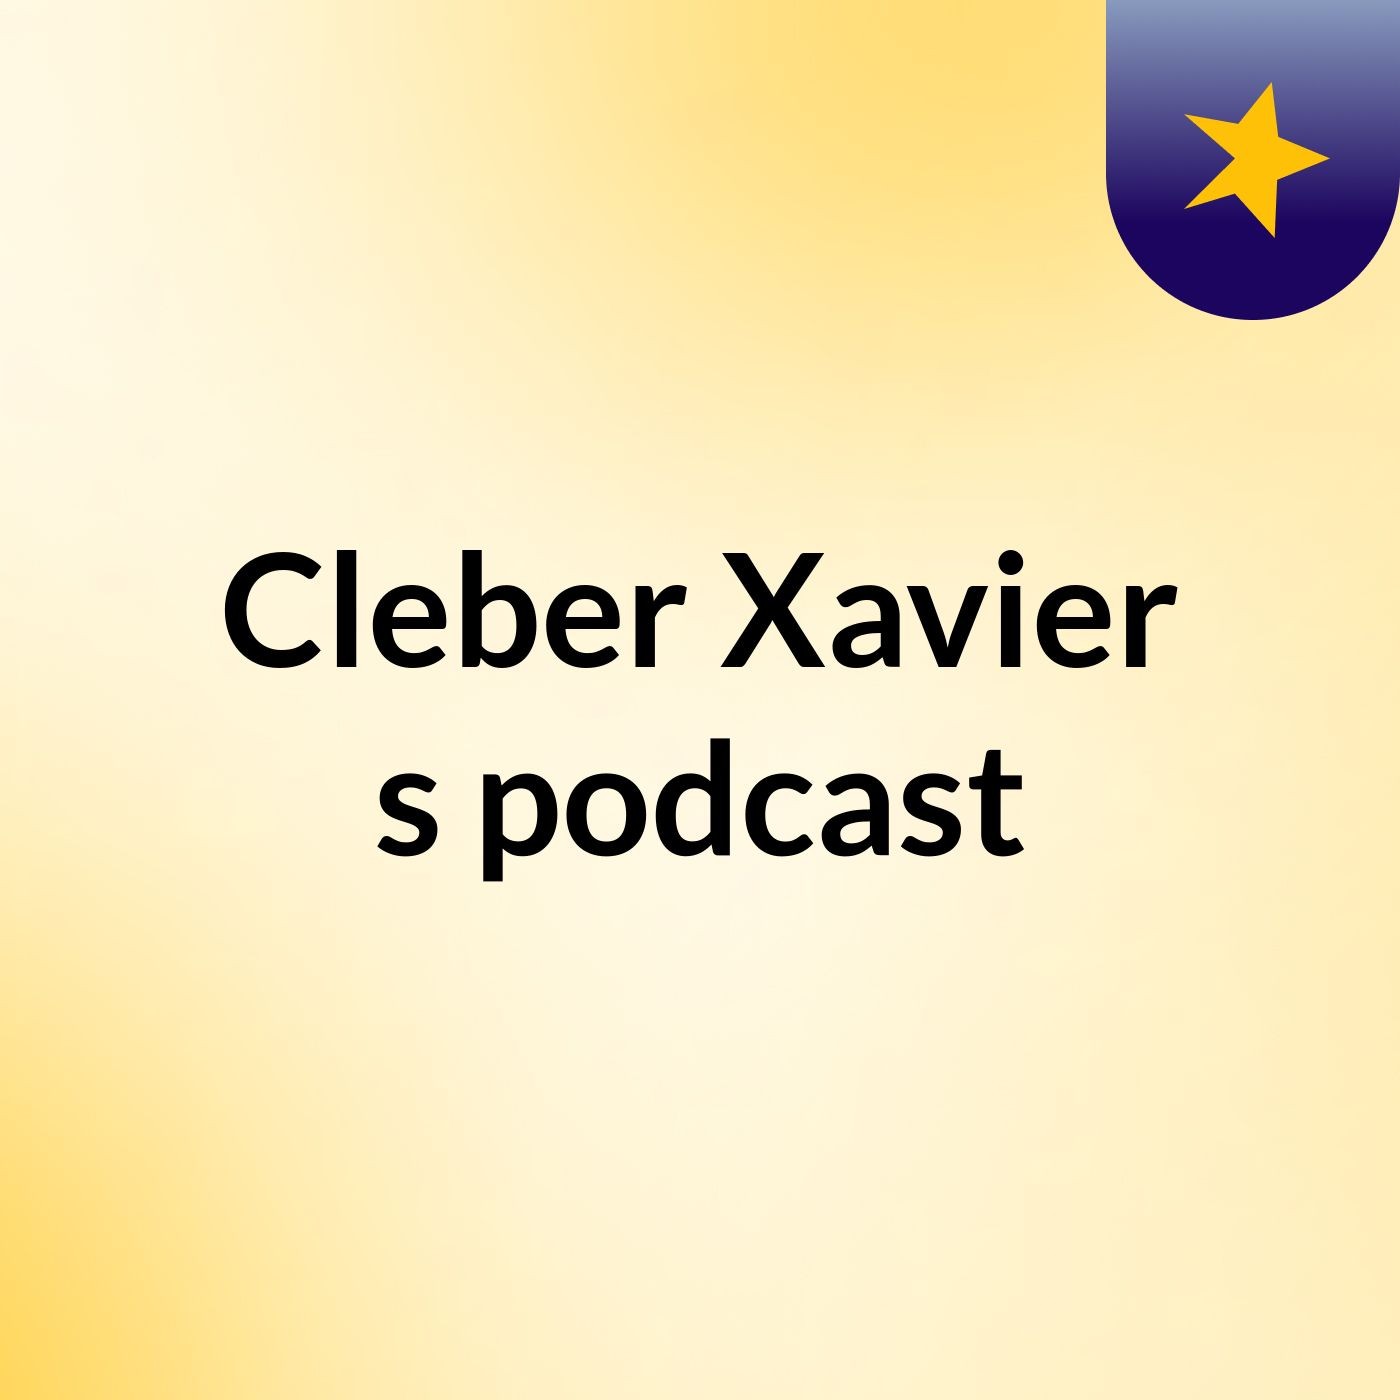 Cleber Xavier's podcast